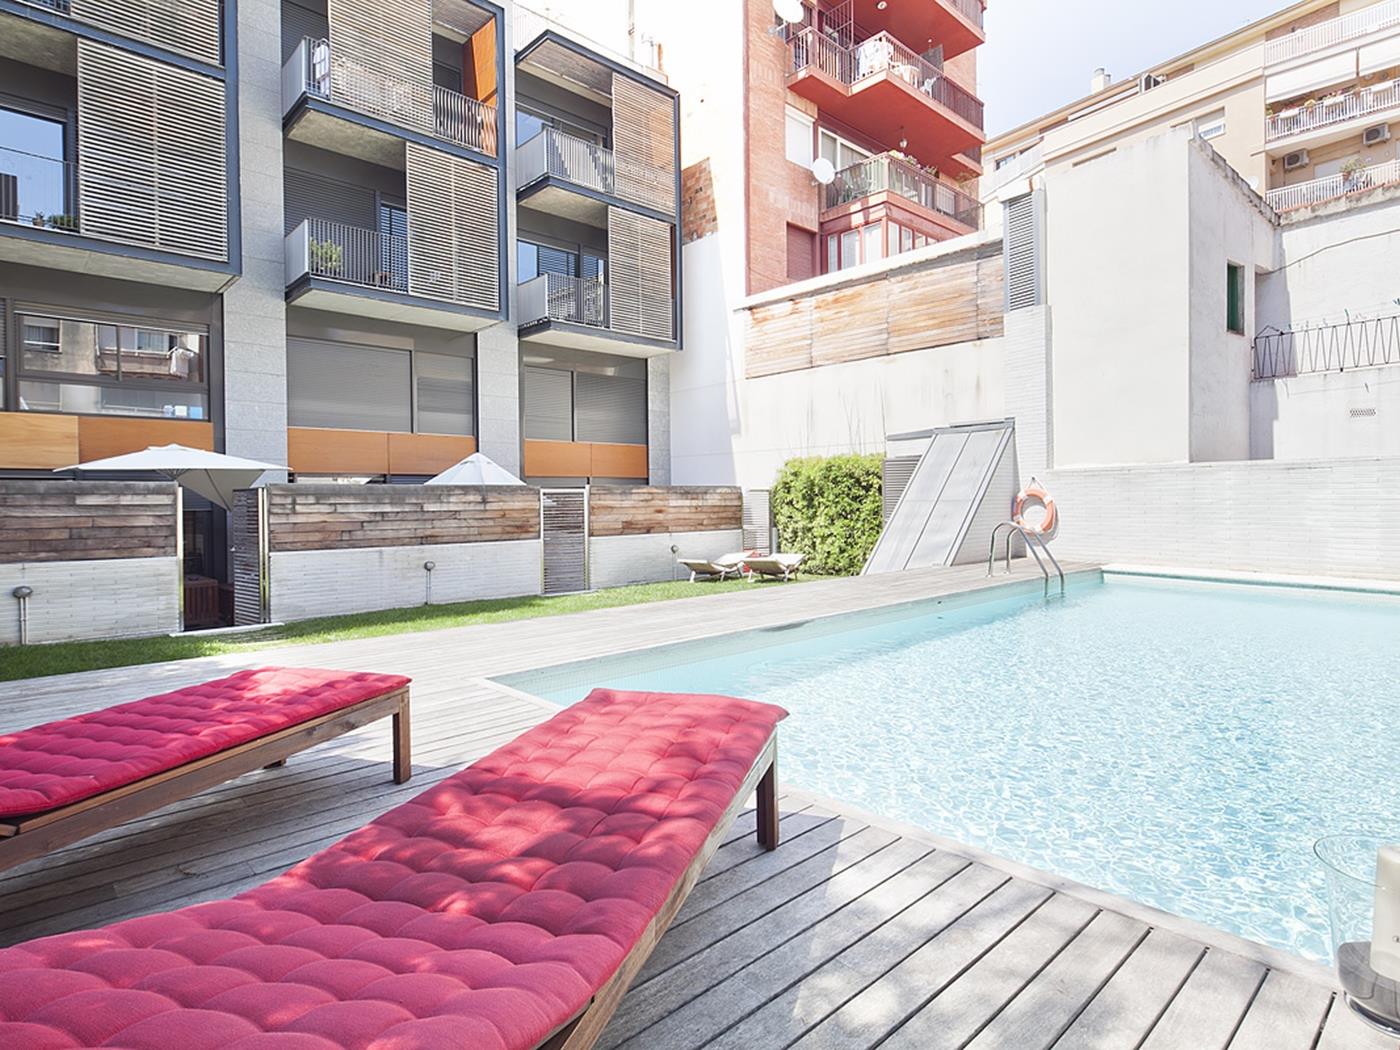 Wohnung mit Schwimmbad in der nähe des Sagrada Familia - My Space Barcelona Appartementen